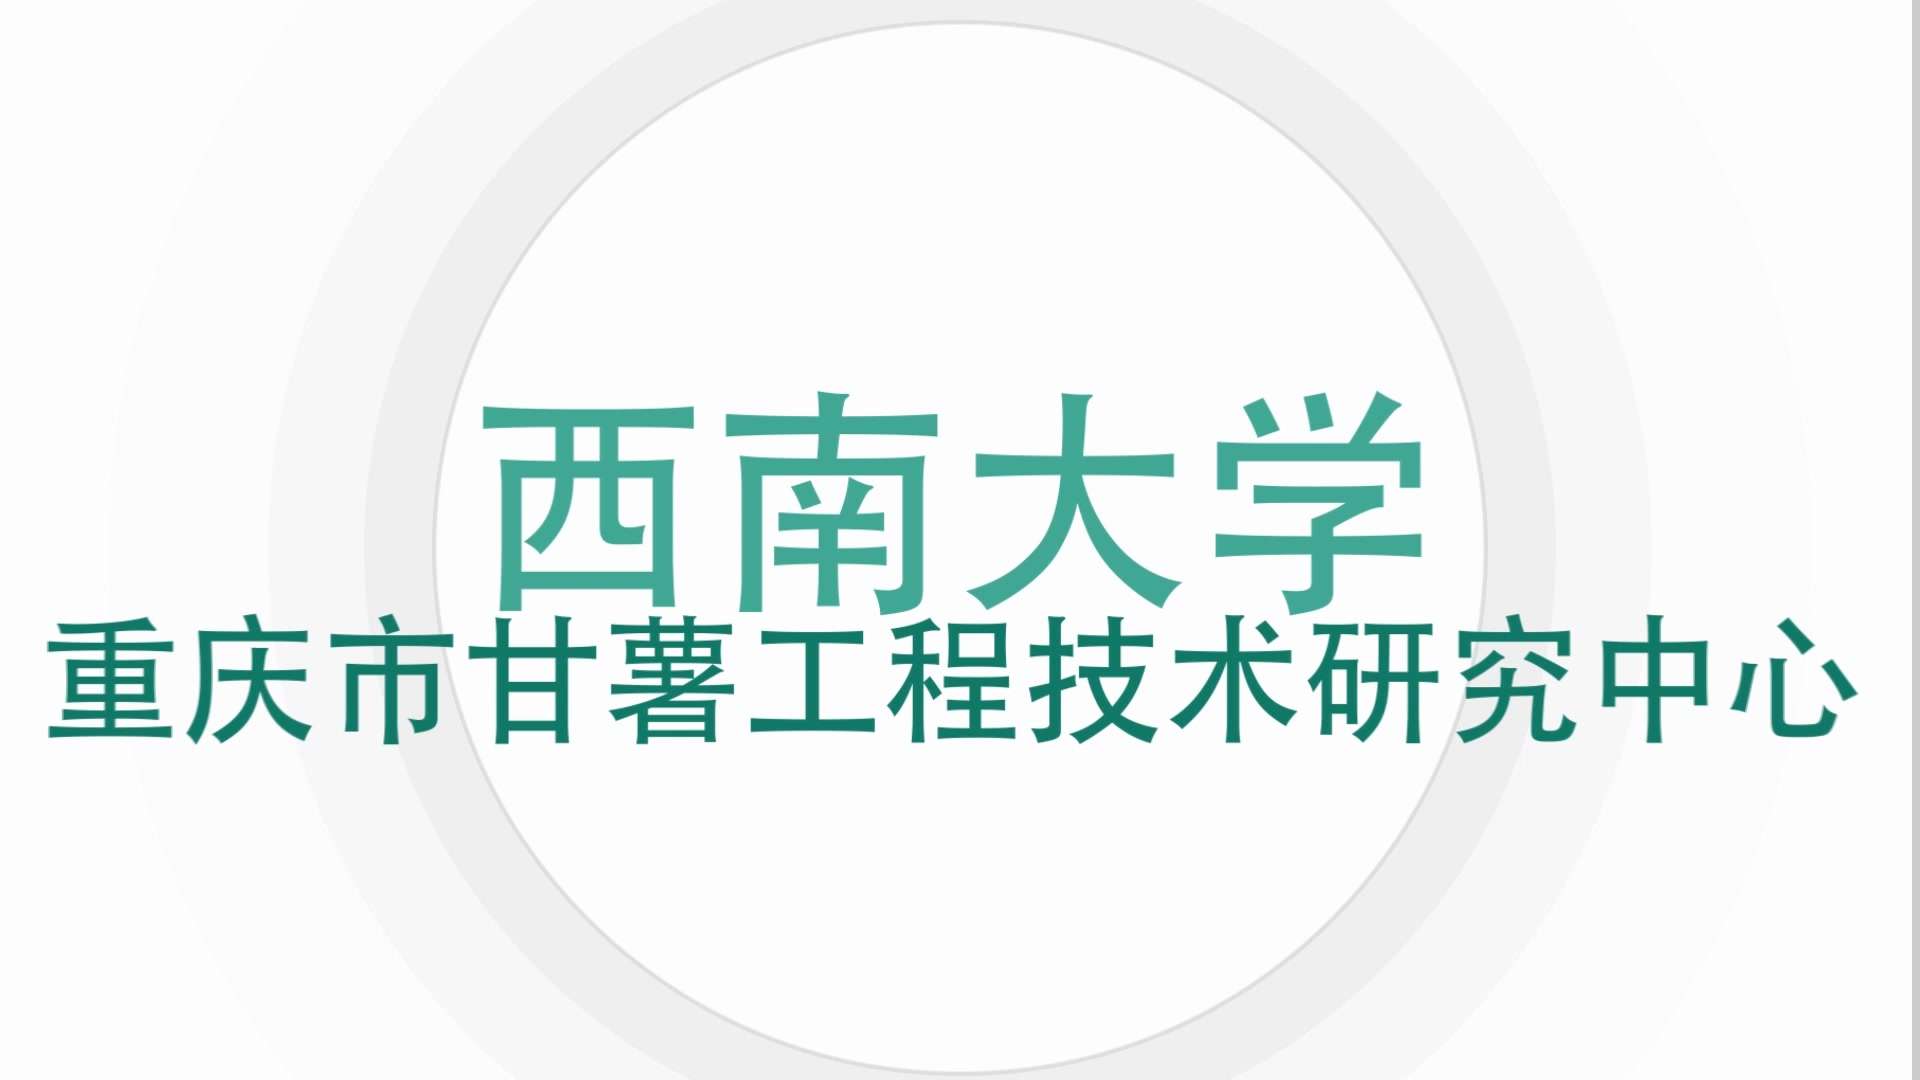 【样片分享】西南大学重庆市甘薯工程技术研究中心